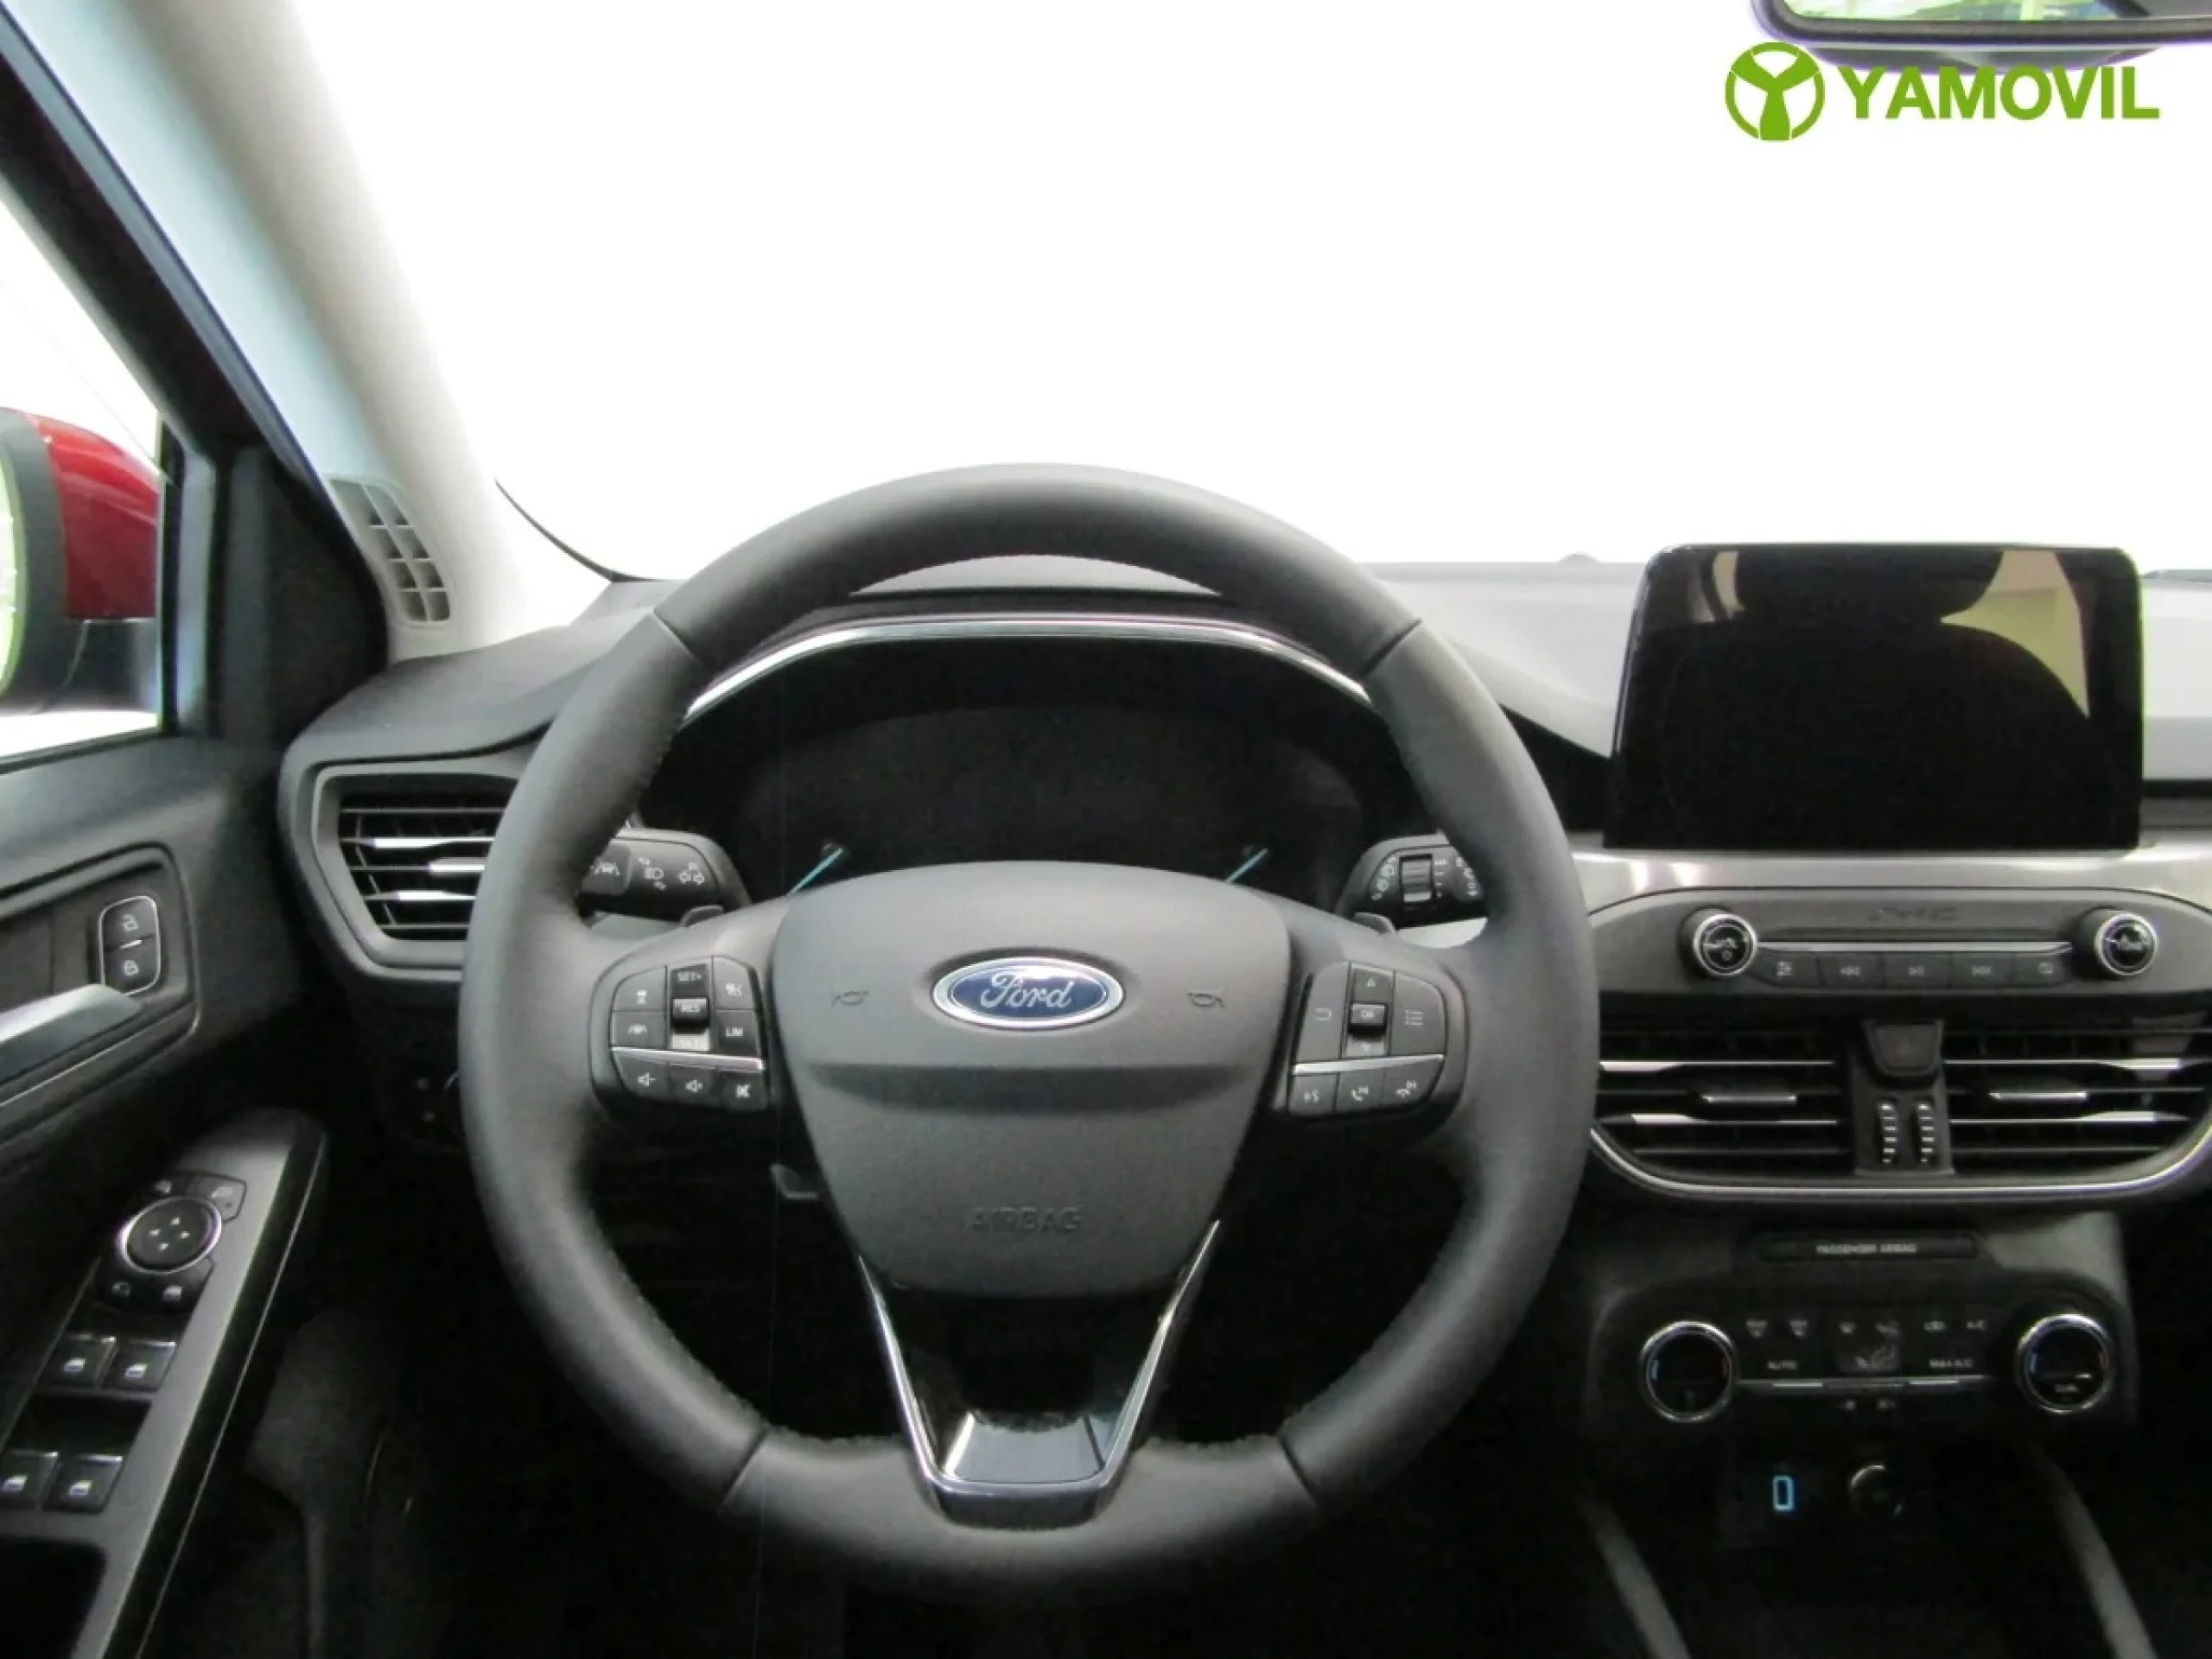 Ford Focus 1.0 Ecoboost Titanium Powershift 92 kW (125 CV) - Foto 20